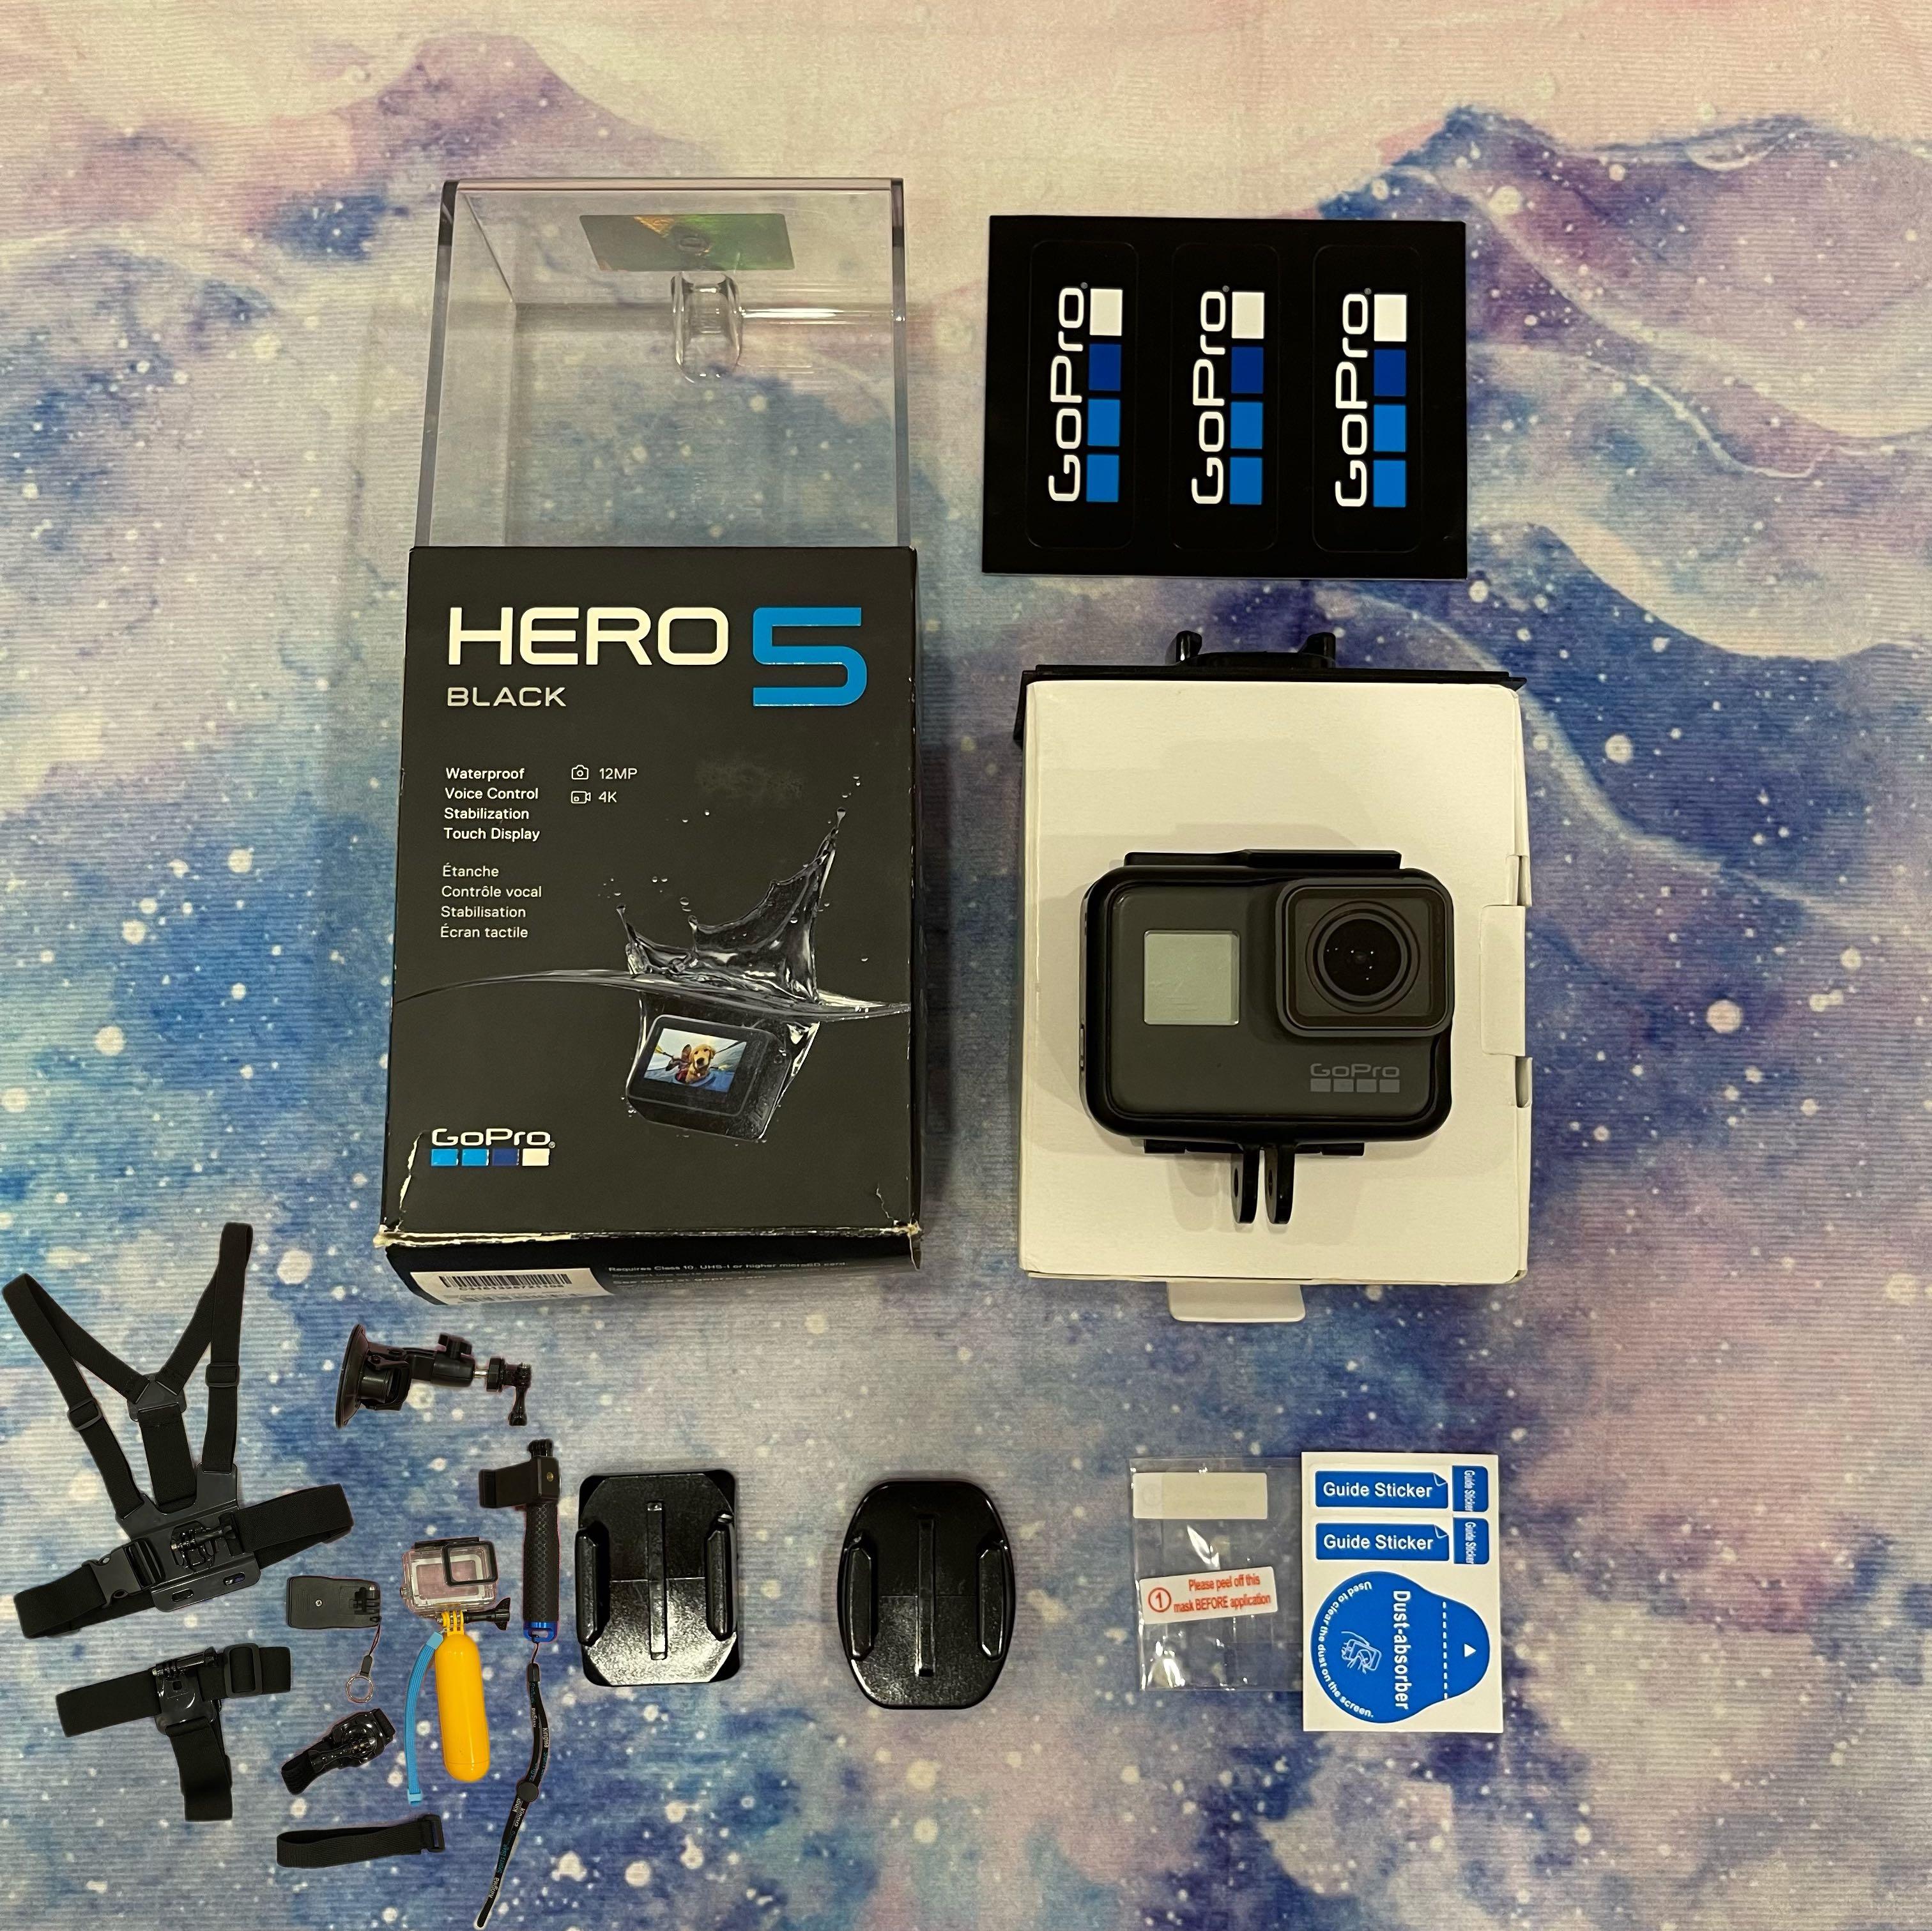 超特価 GoPro HERO5 BLACK セット (ハンドグリップ、SDカードつき) NIyFH-m61532331884 